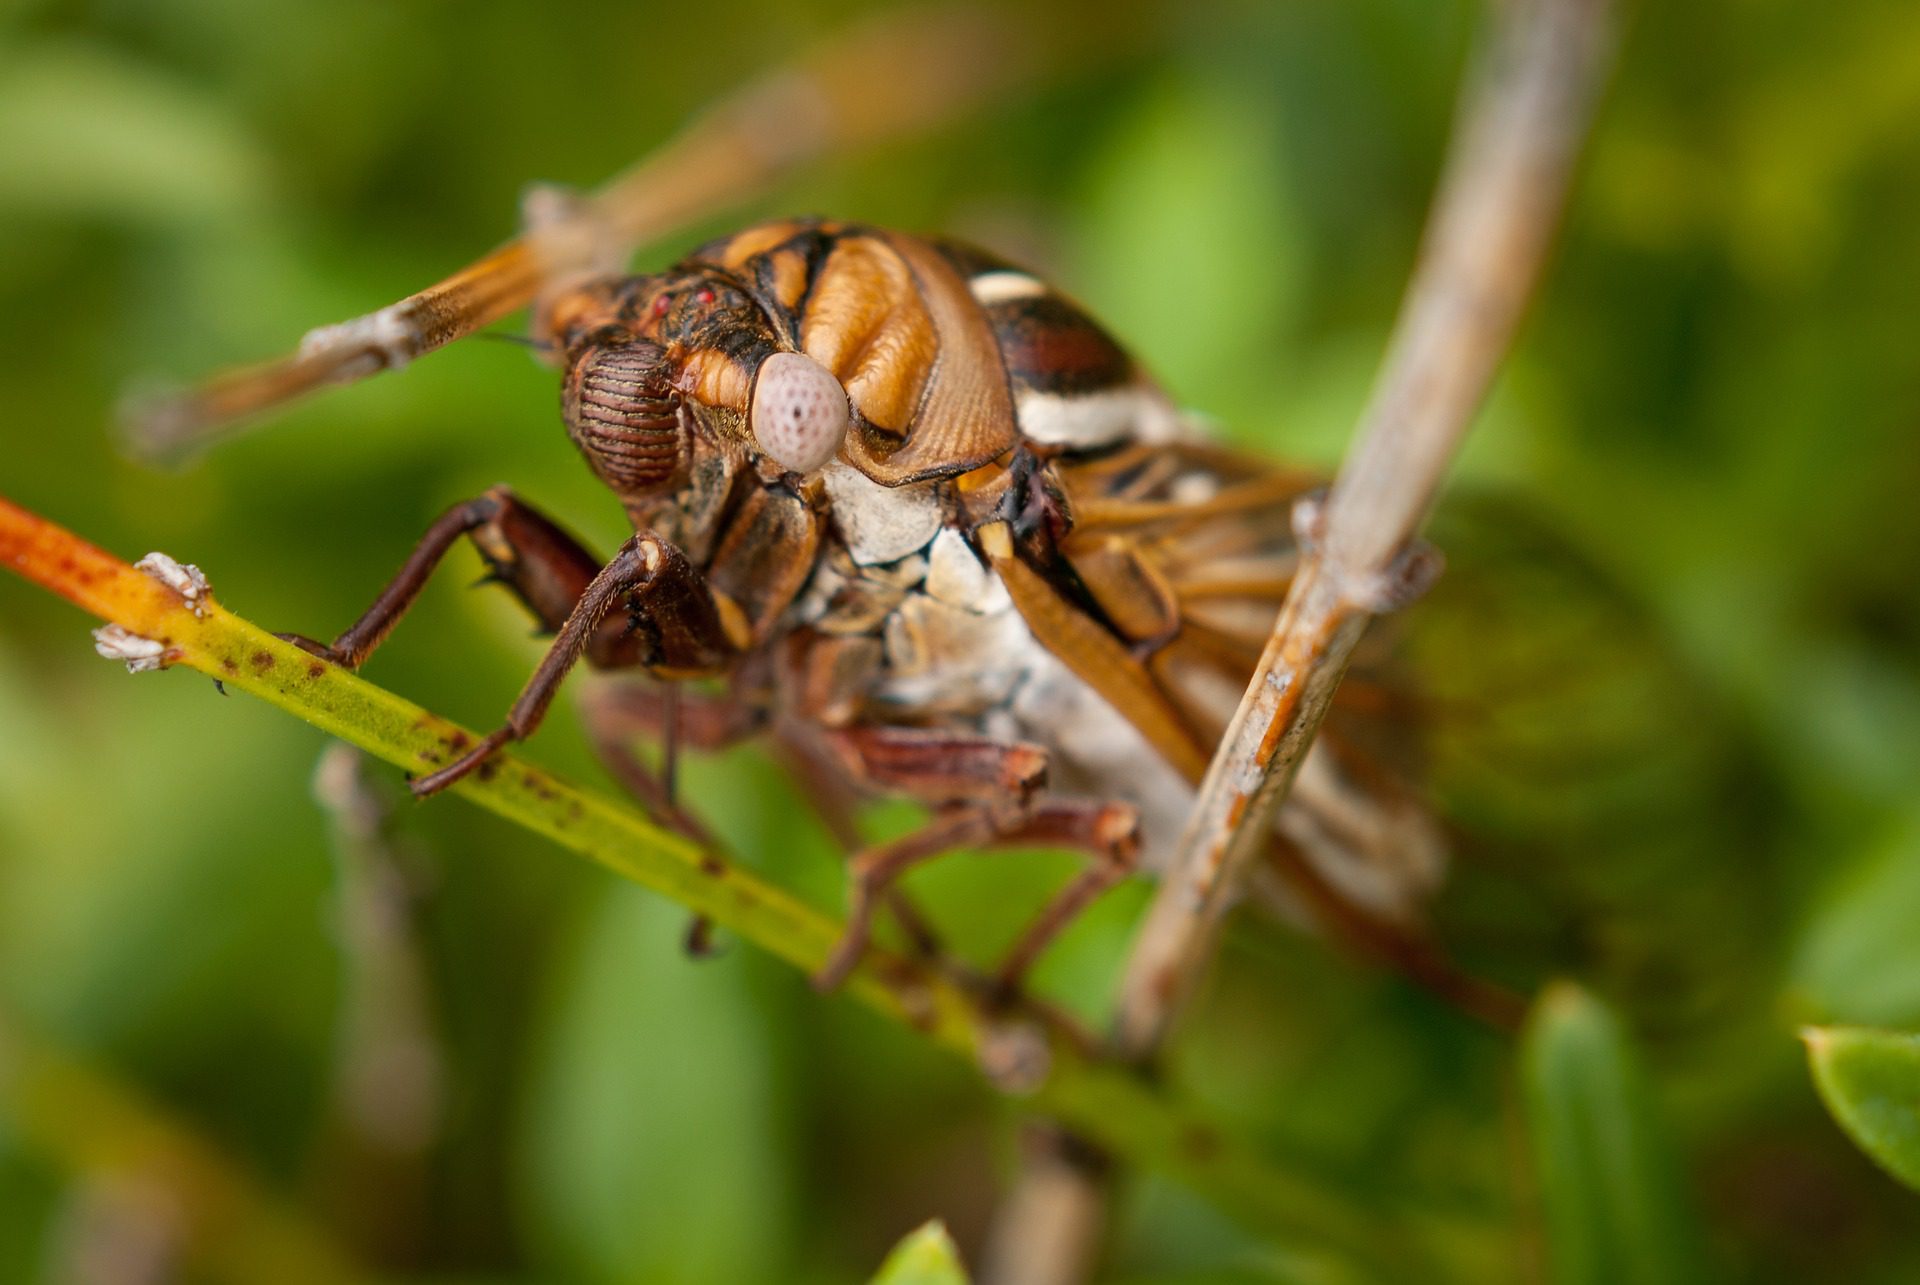 Ağustos böceği - İLKE DUYAN -BÜYÜKÇEKMECE -İST. / TURKISHFORUM - ABDULLAH TÜRER YENER - cicada agustos bocegi